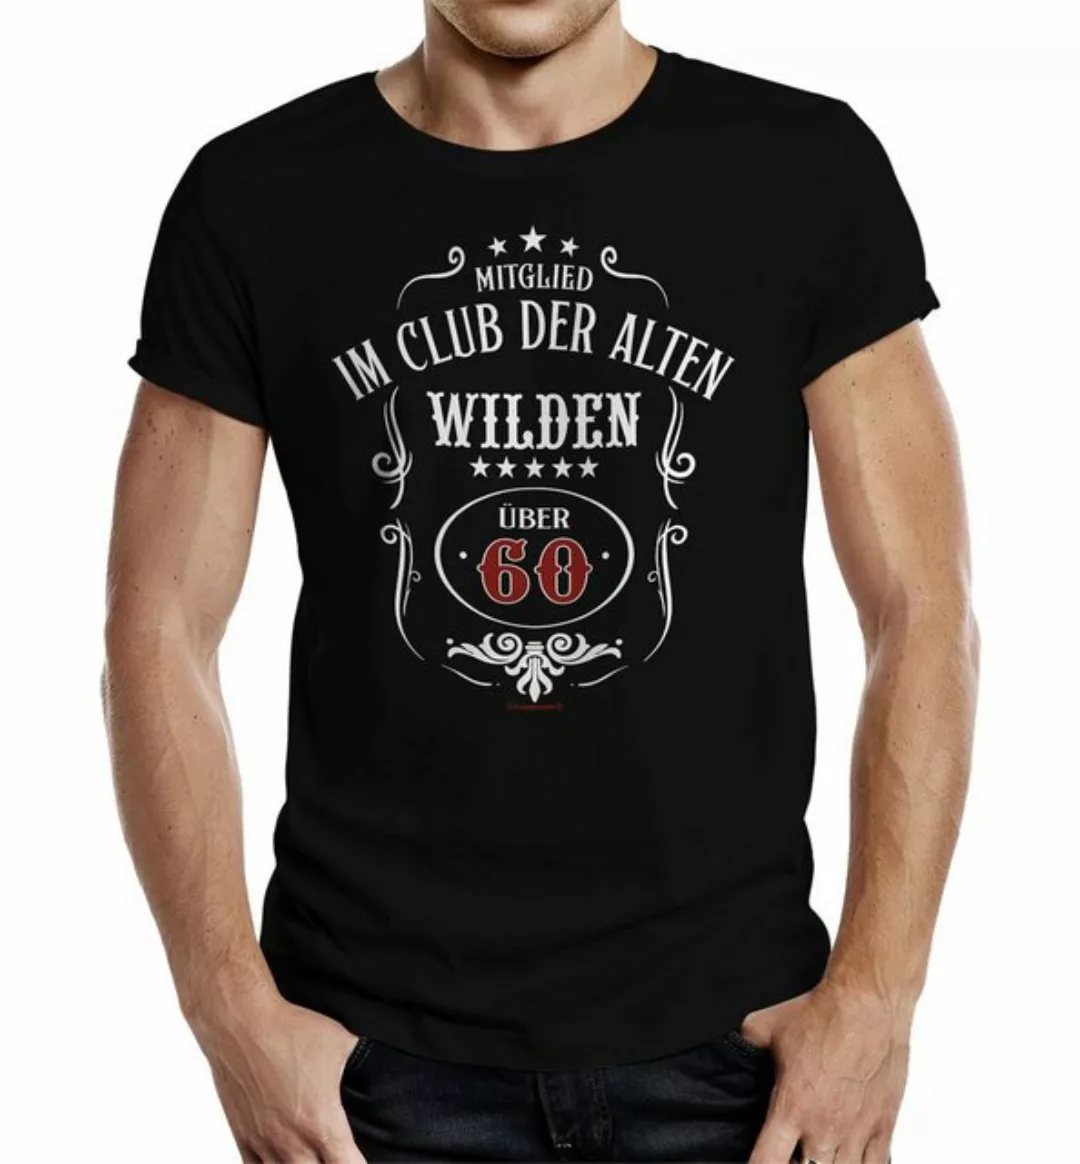 RAHMENLOS® T-Shirt als Geschenk zum 60. - Club der Alten Wilden über 60 günstig online kaufen